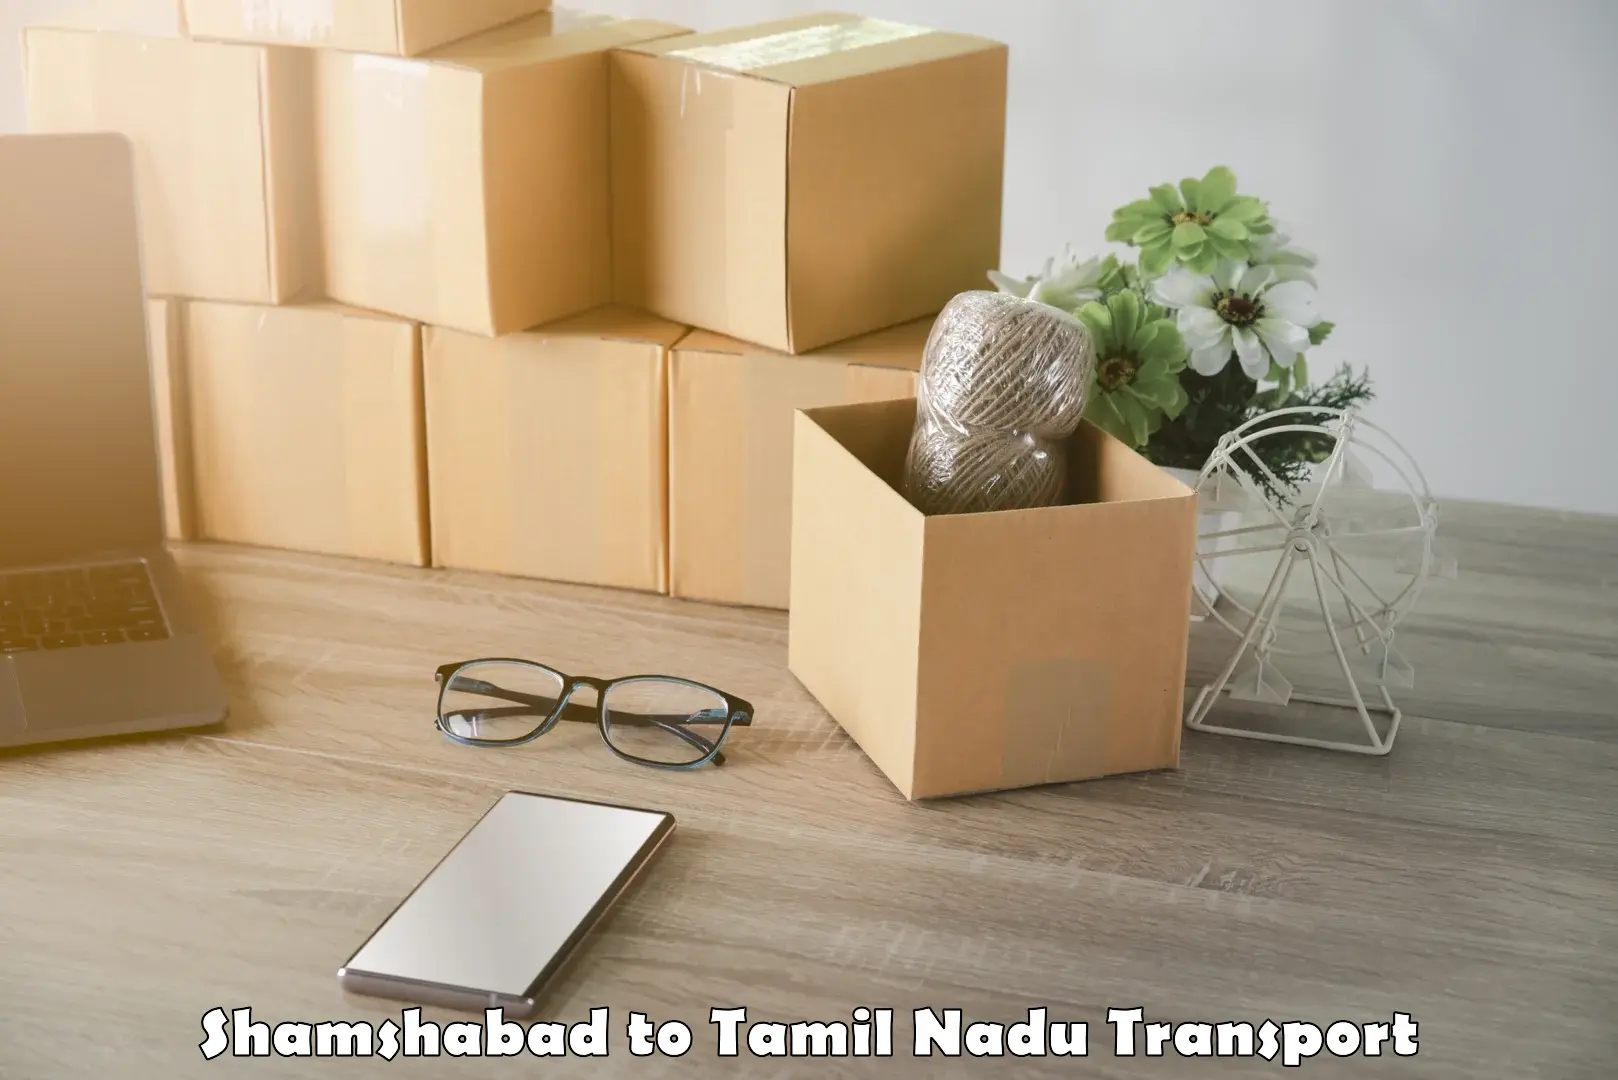 Land transport services Shamshabad to Tamil Nadu